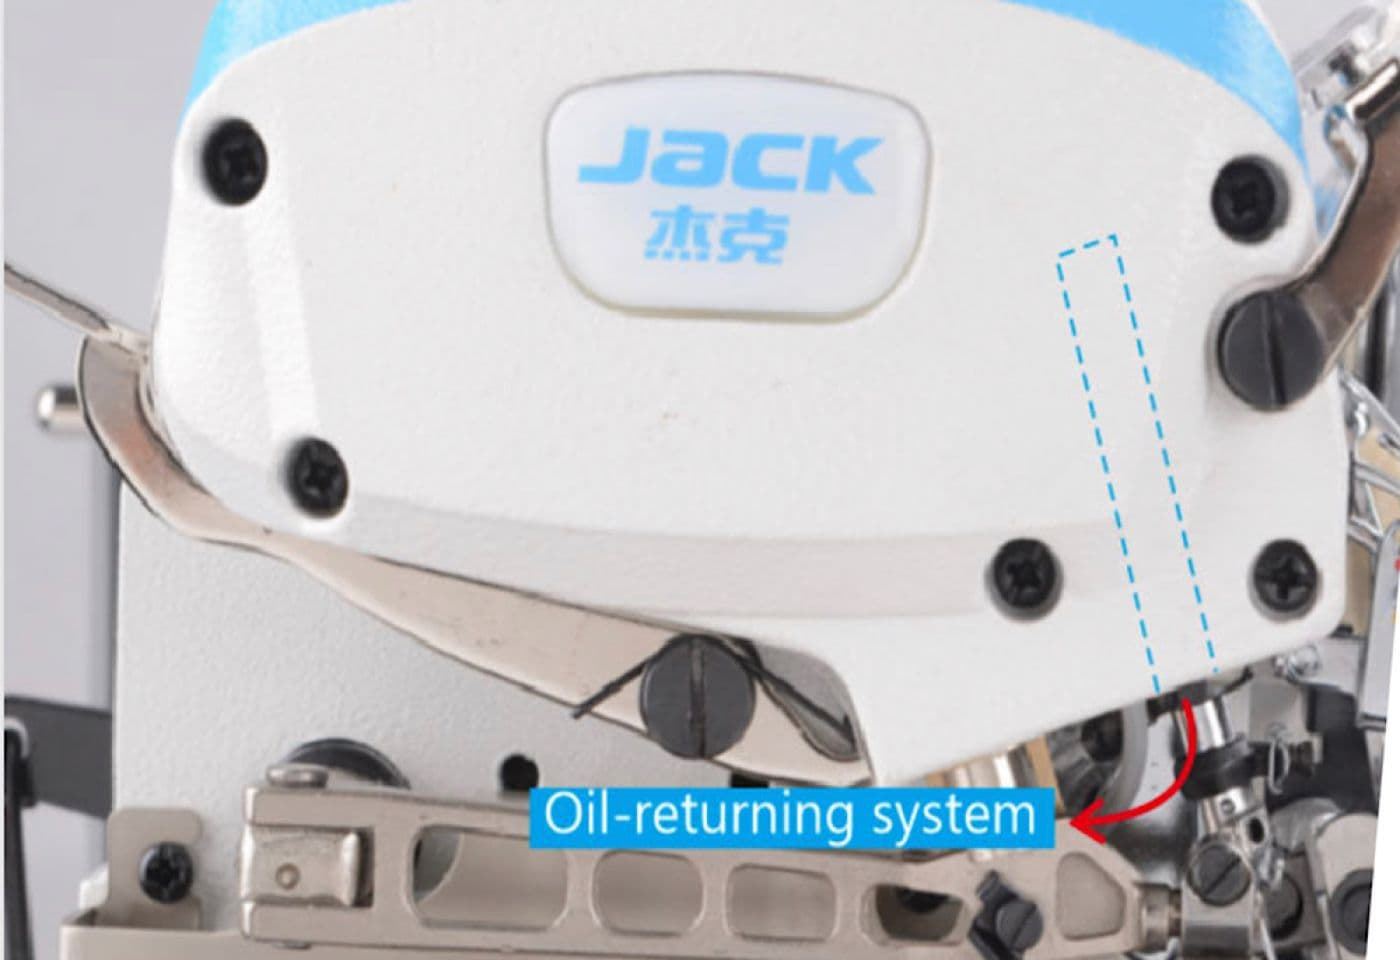 JACK JK-E4-5 (5 HILOS) - Máquina de coser industrial remalladora - Imagen 3